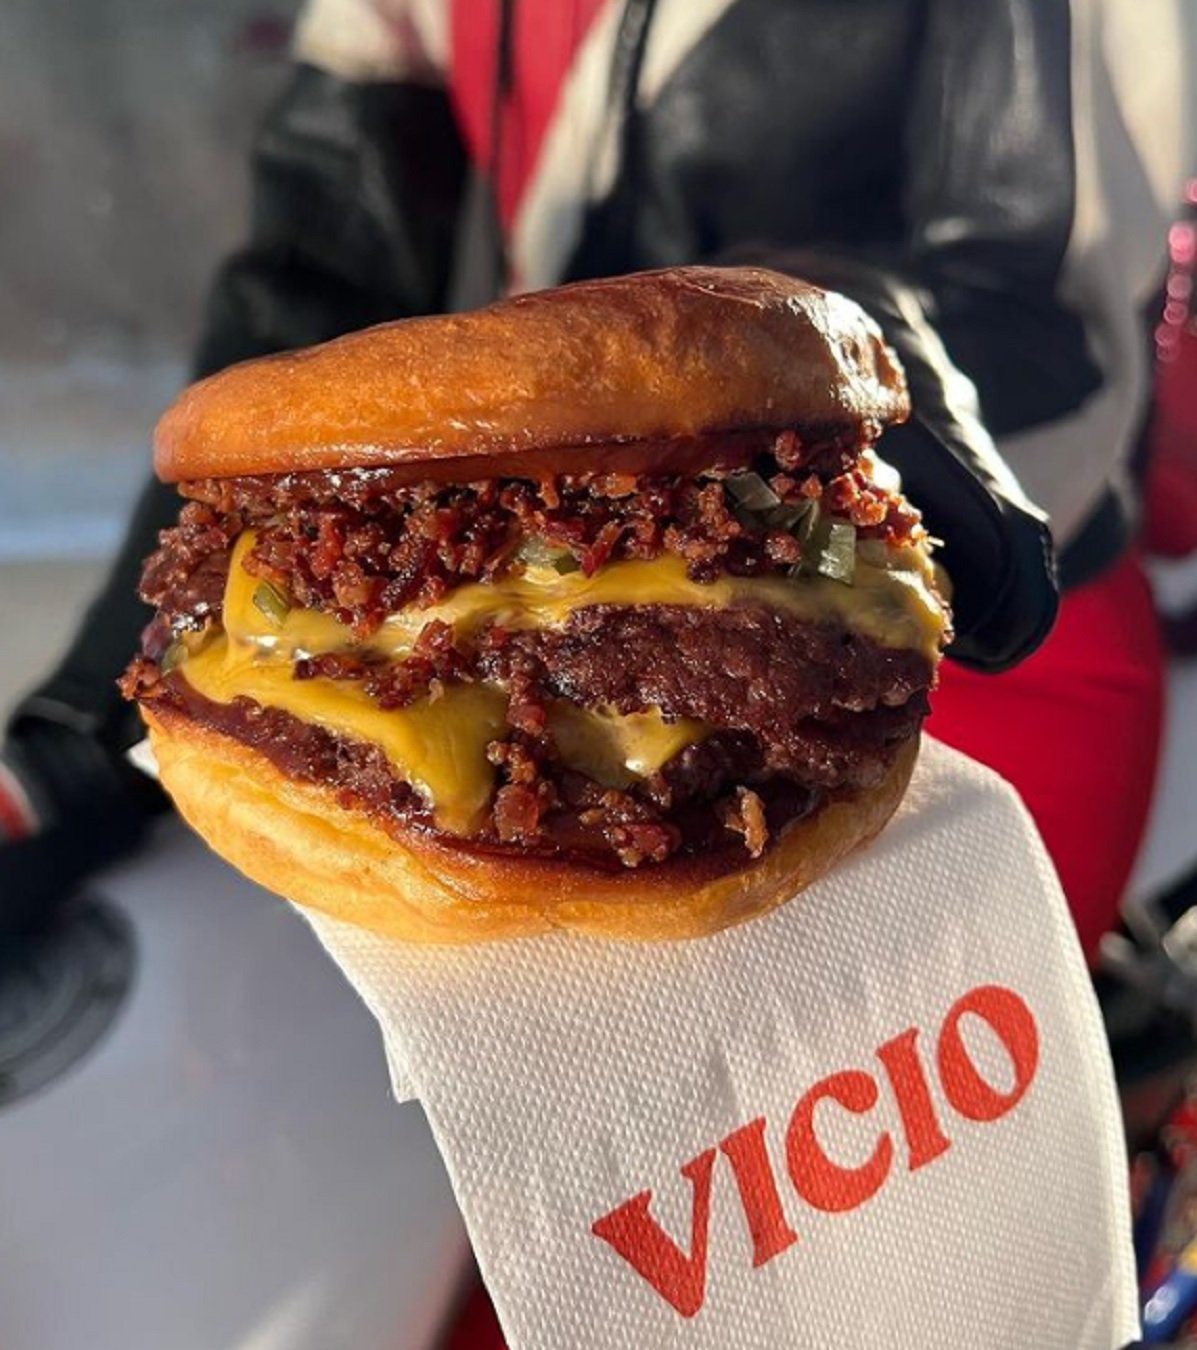 Així és una hamburguesa VICI - Instagram